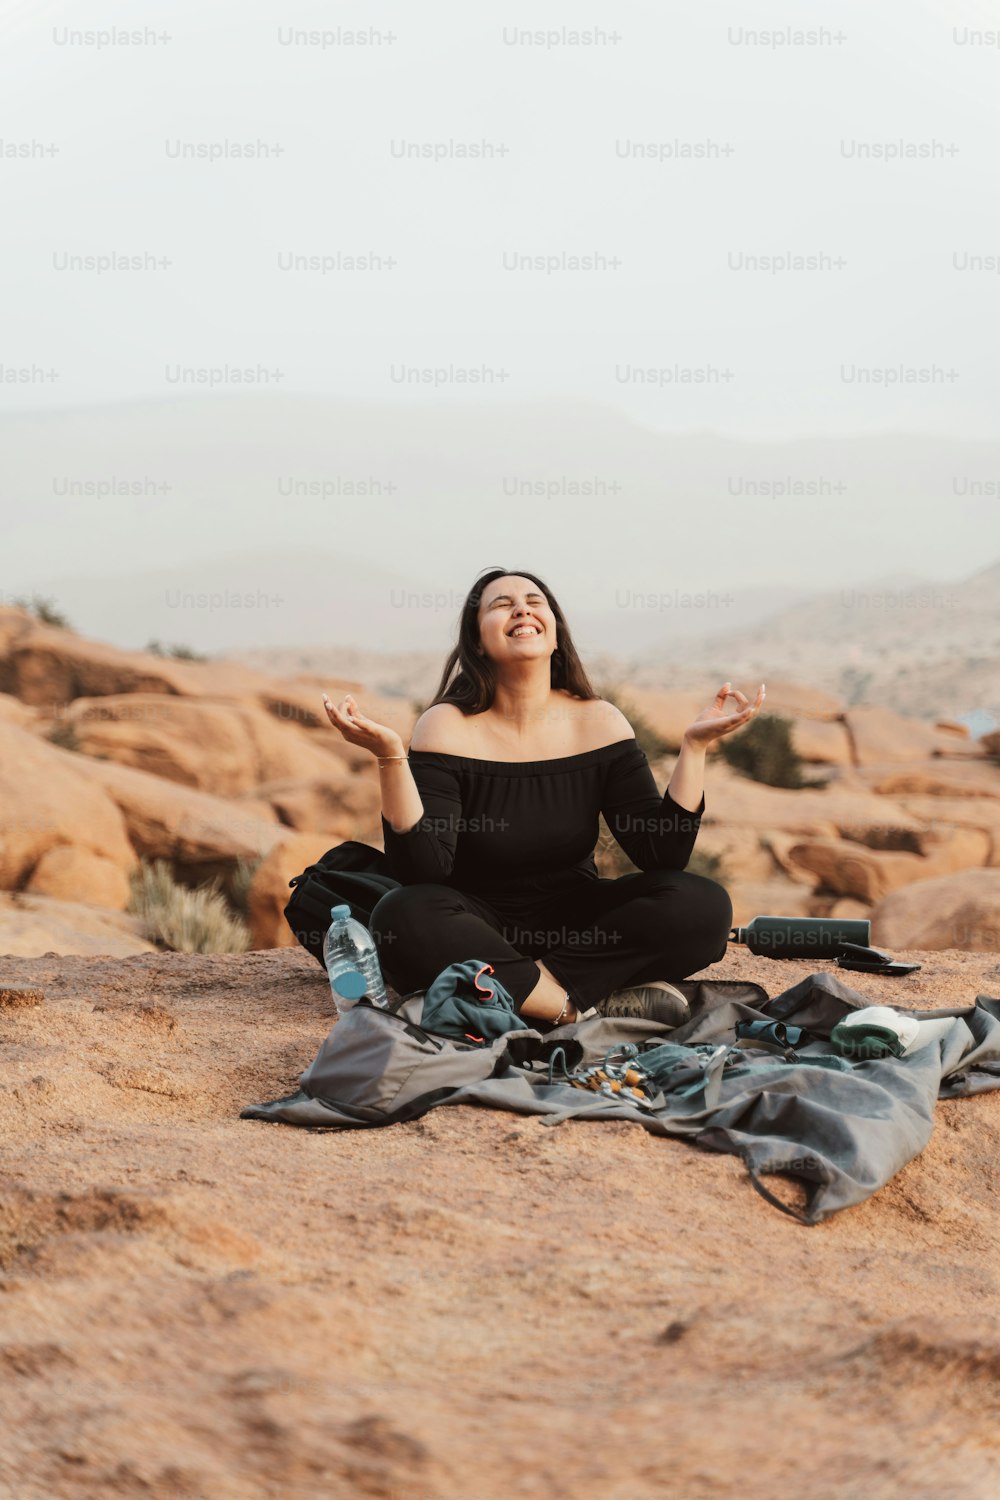 Una mujer con una blusa negra está sentada sobre una manta en el desierto